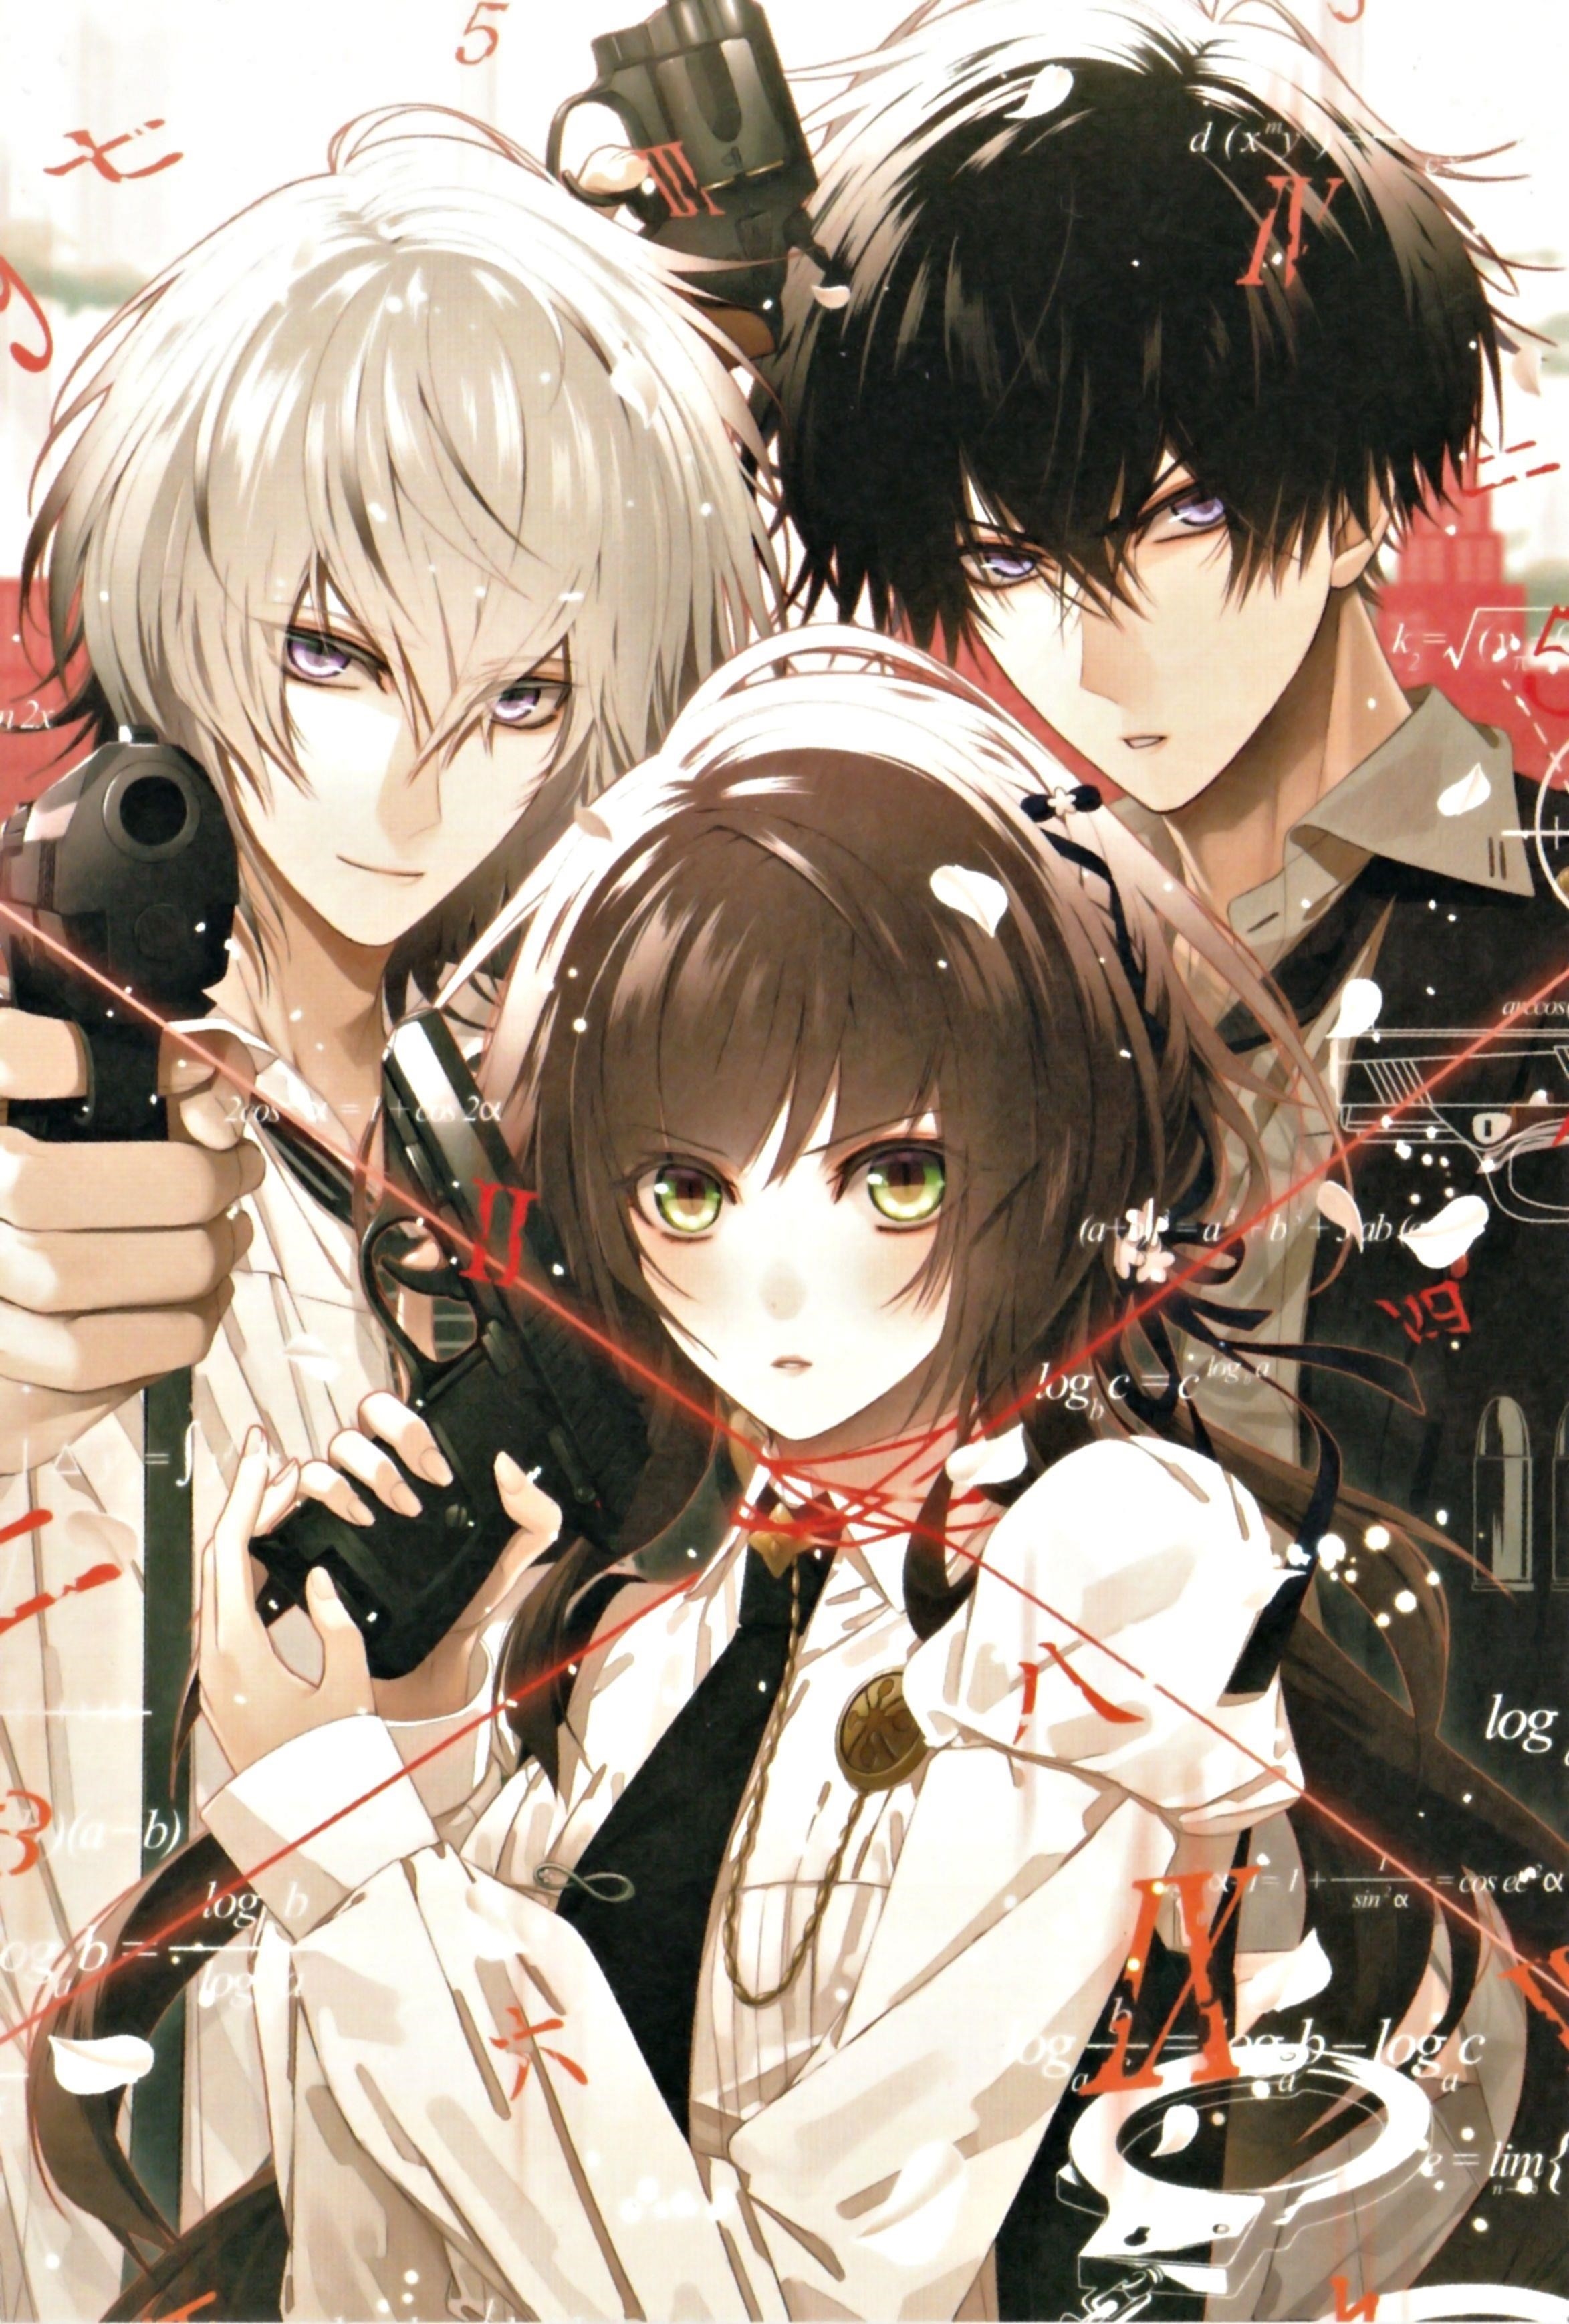 Hình ảnh thể hiện ba người bạn thân trong bộ truyện tranh anime với phong cách hầm hố.